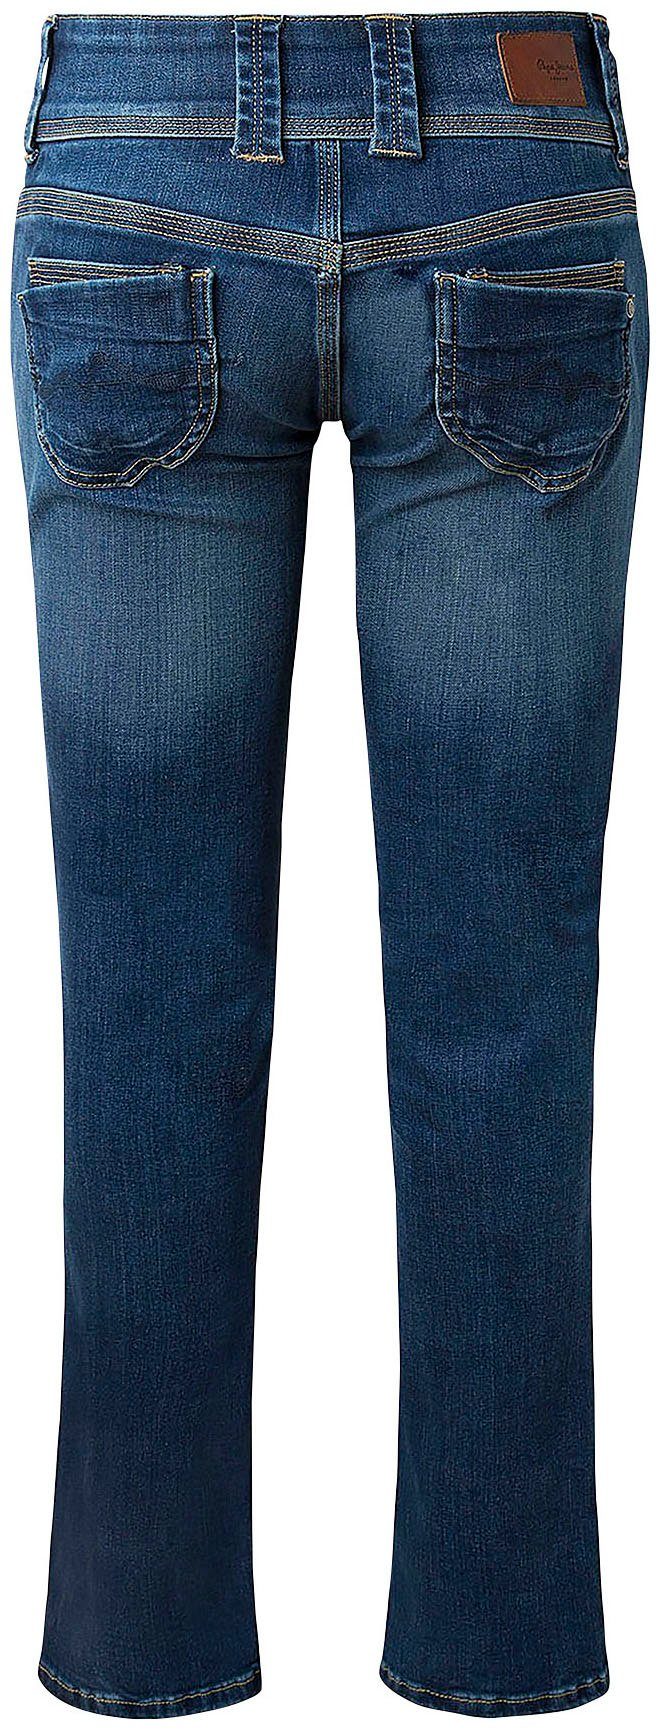 blau-ausgewaschen Regular-fit-Jeans mit Pepe VENUS Jeans Badge